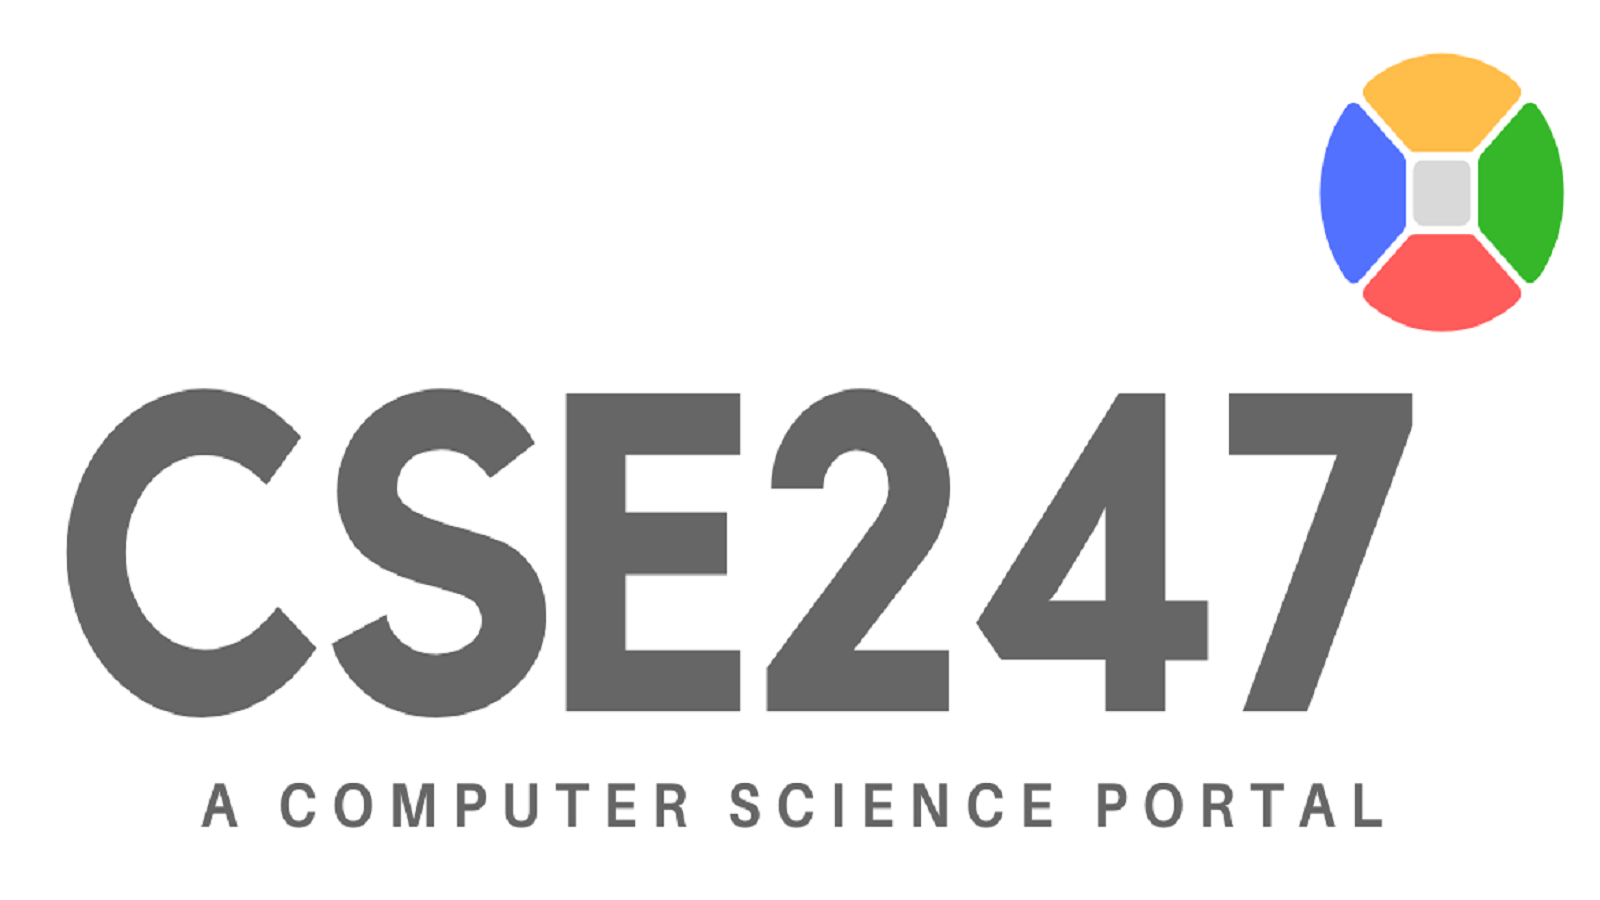 CSE247